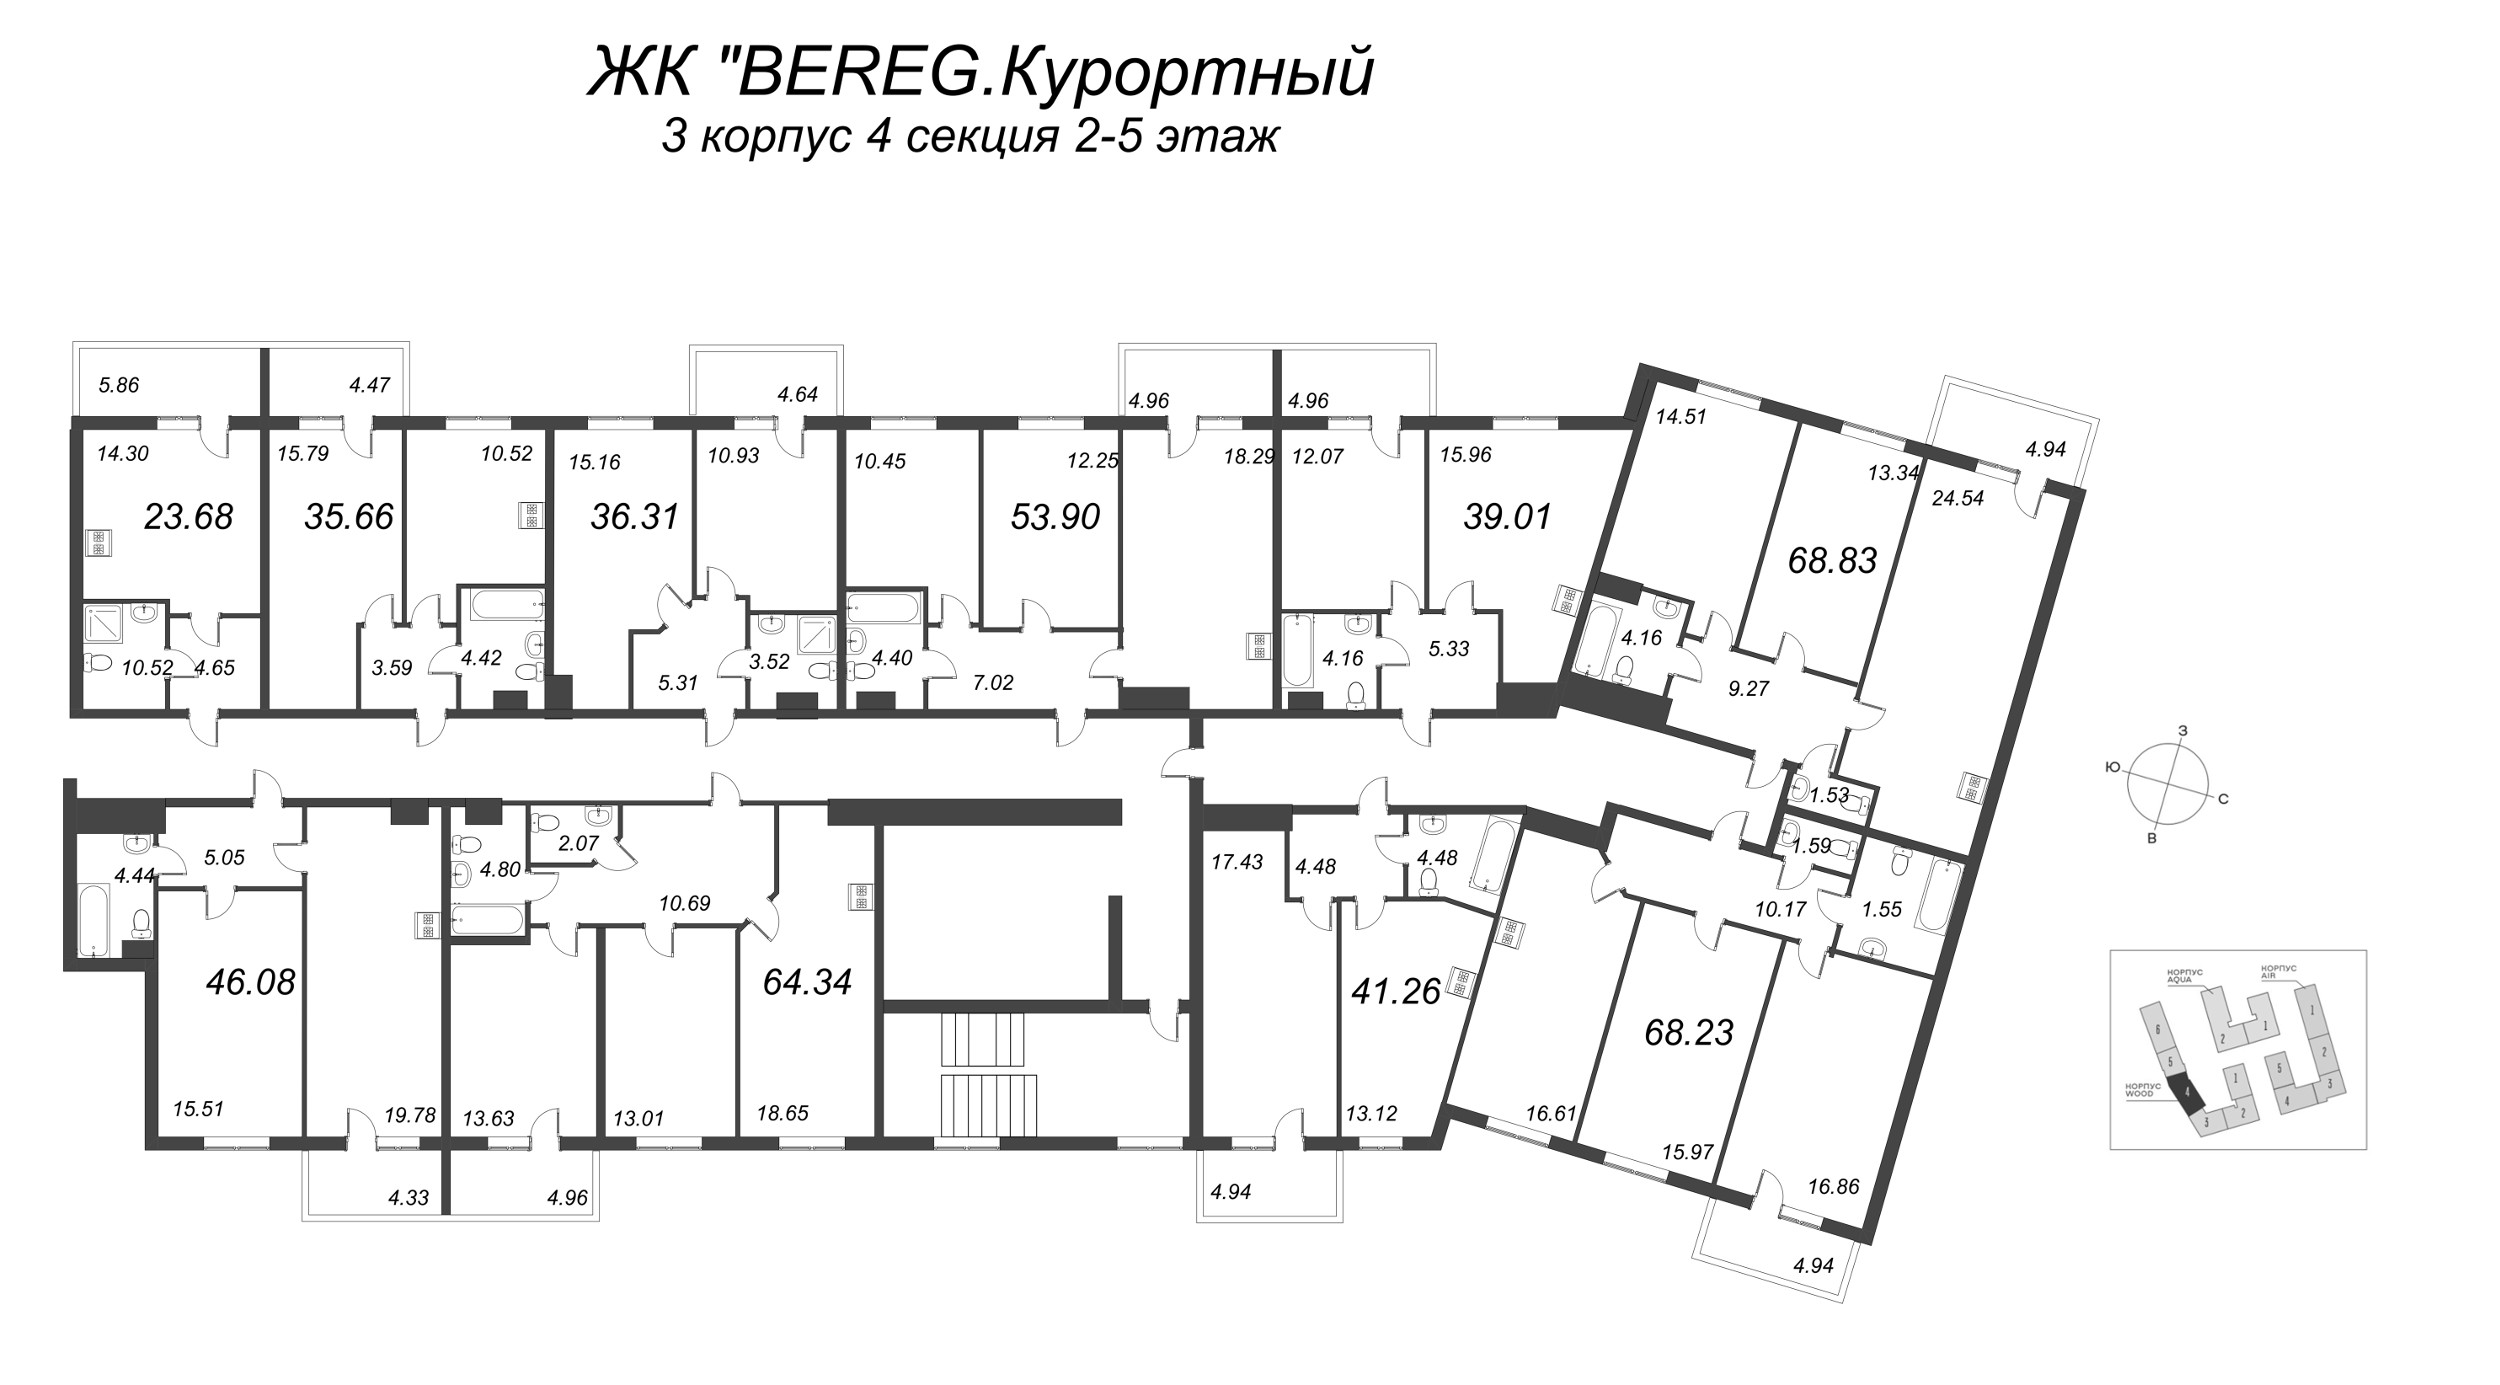 1-комнатная квартира, 40.93 м² в ЖК "Bereg. Курортный" - планировка этажа